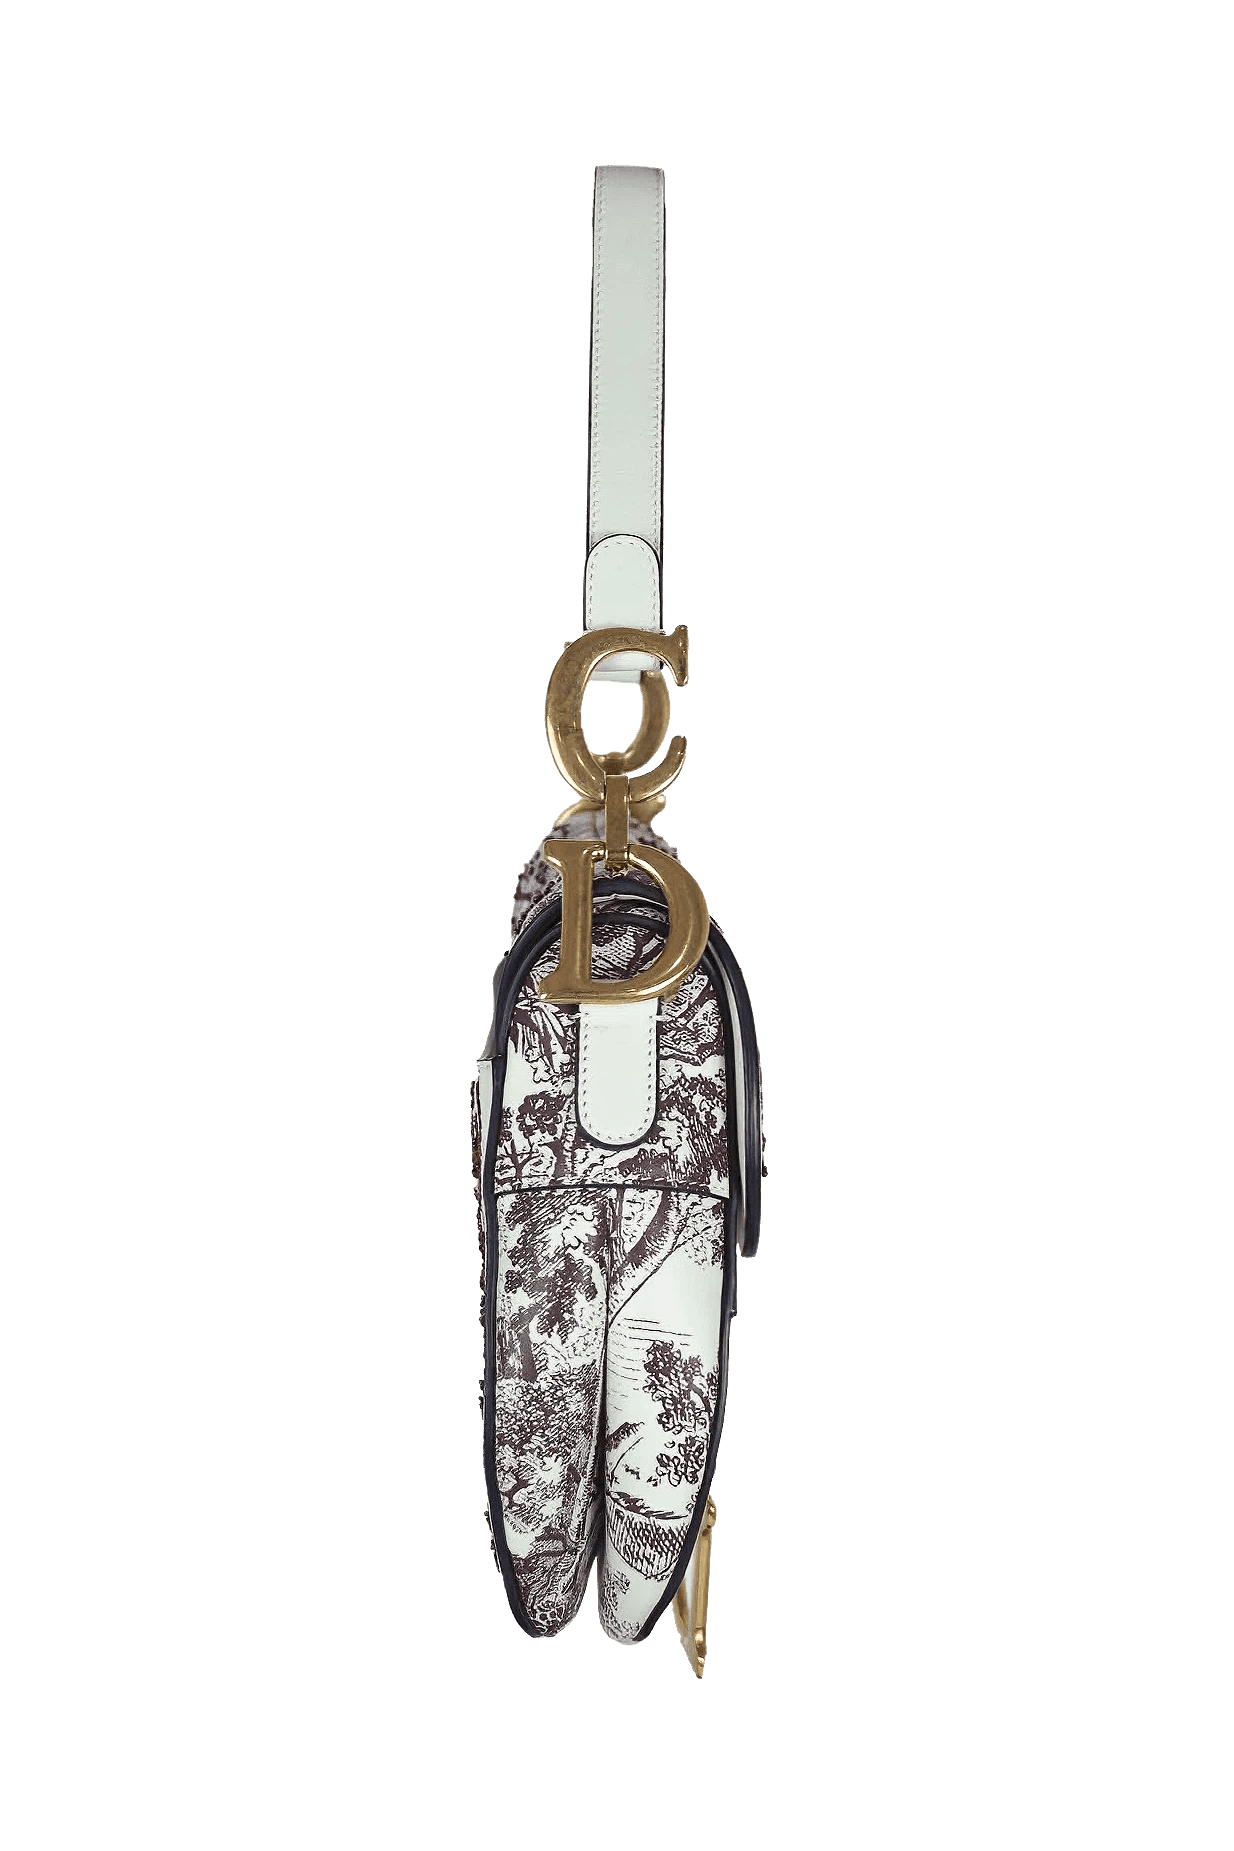 Christian Dior Beaded Toile Tiger Saddle Bag 2019